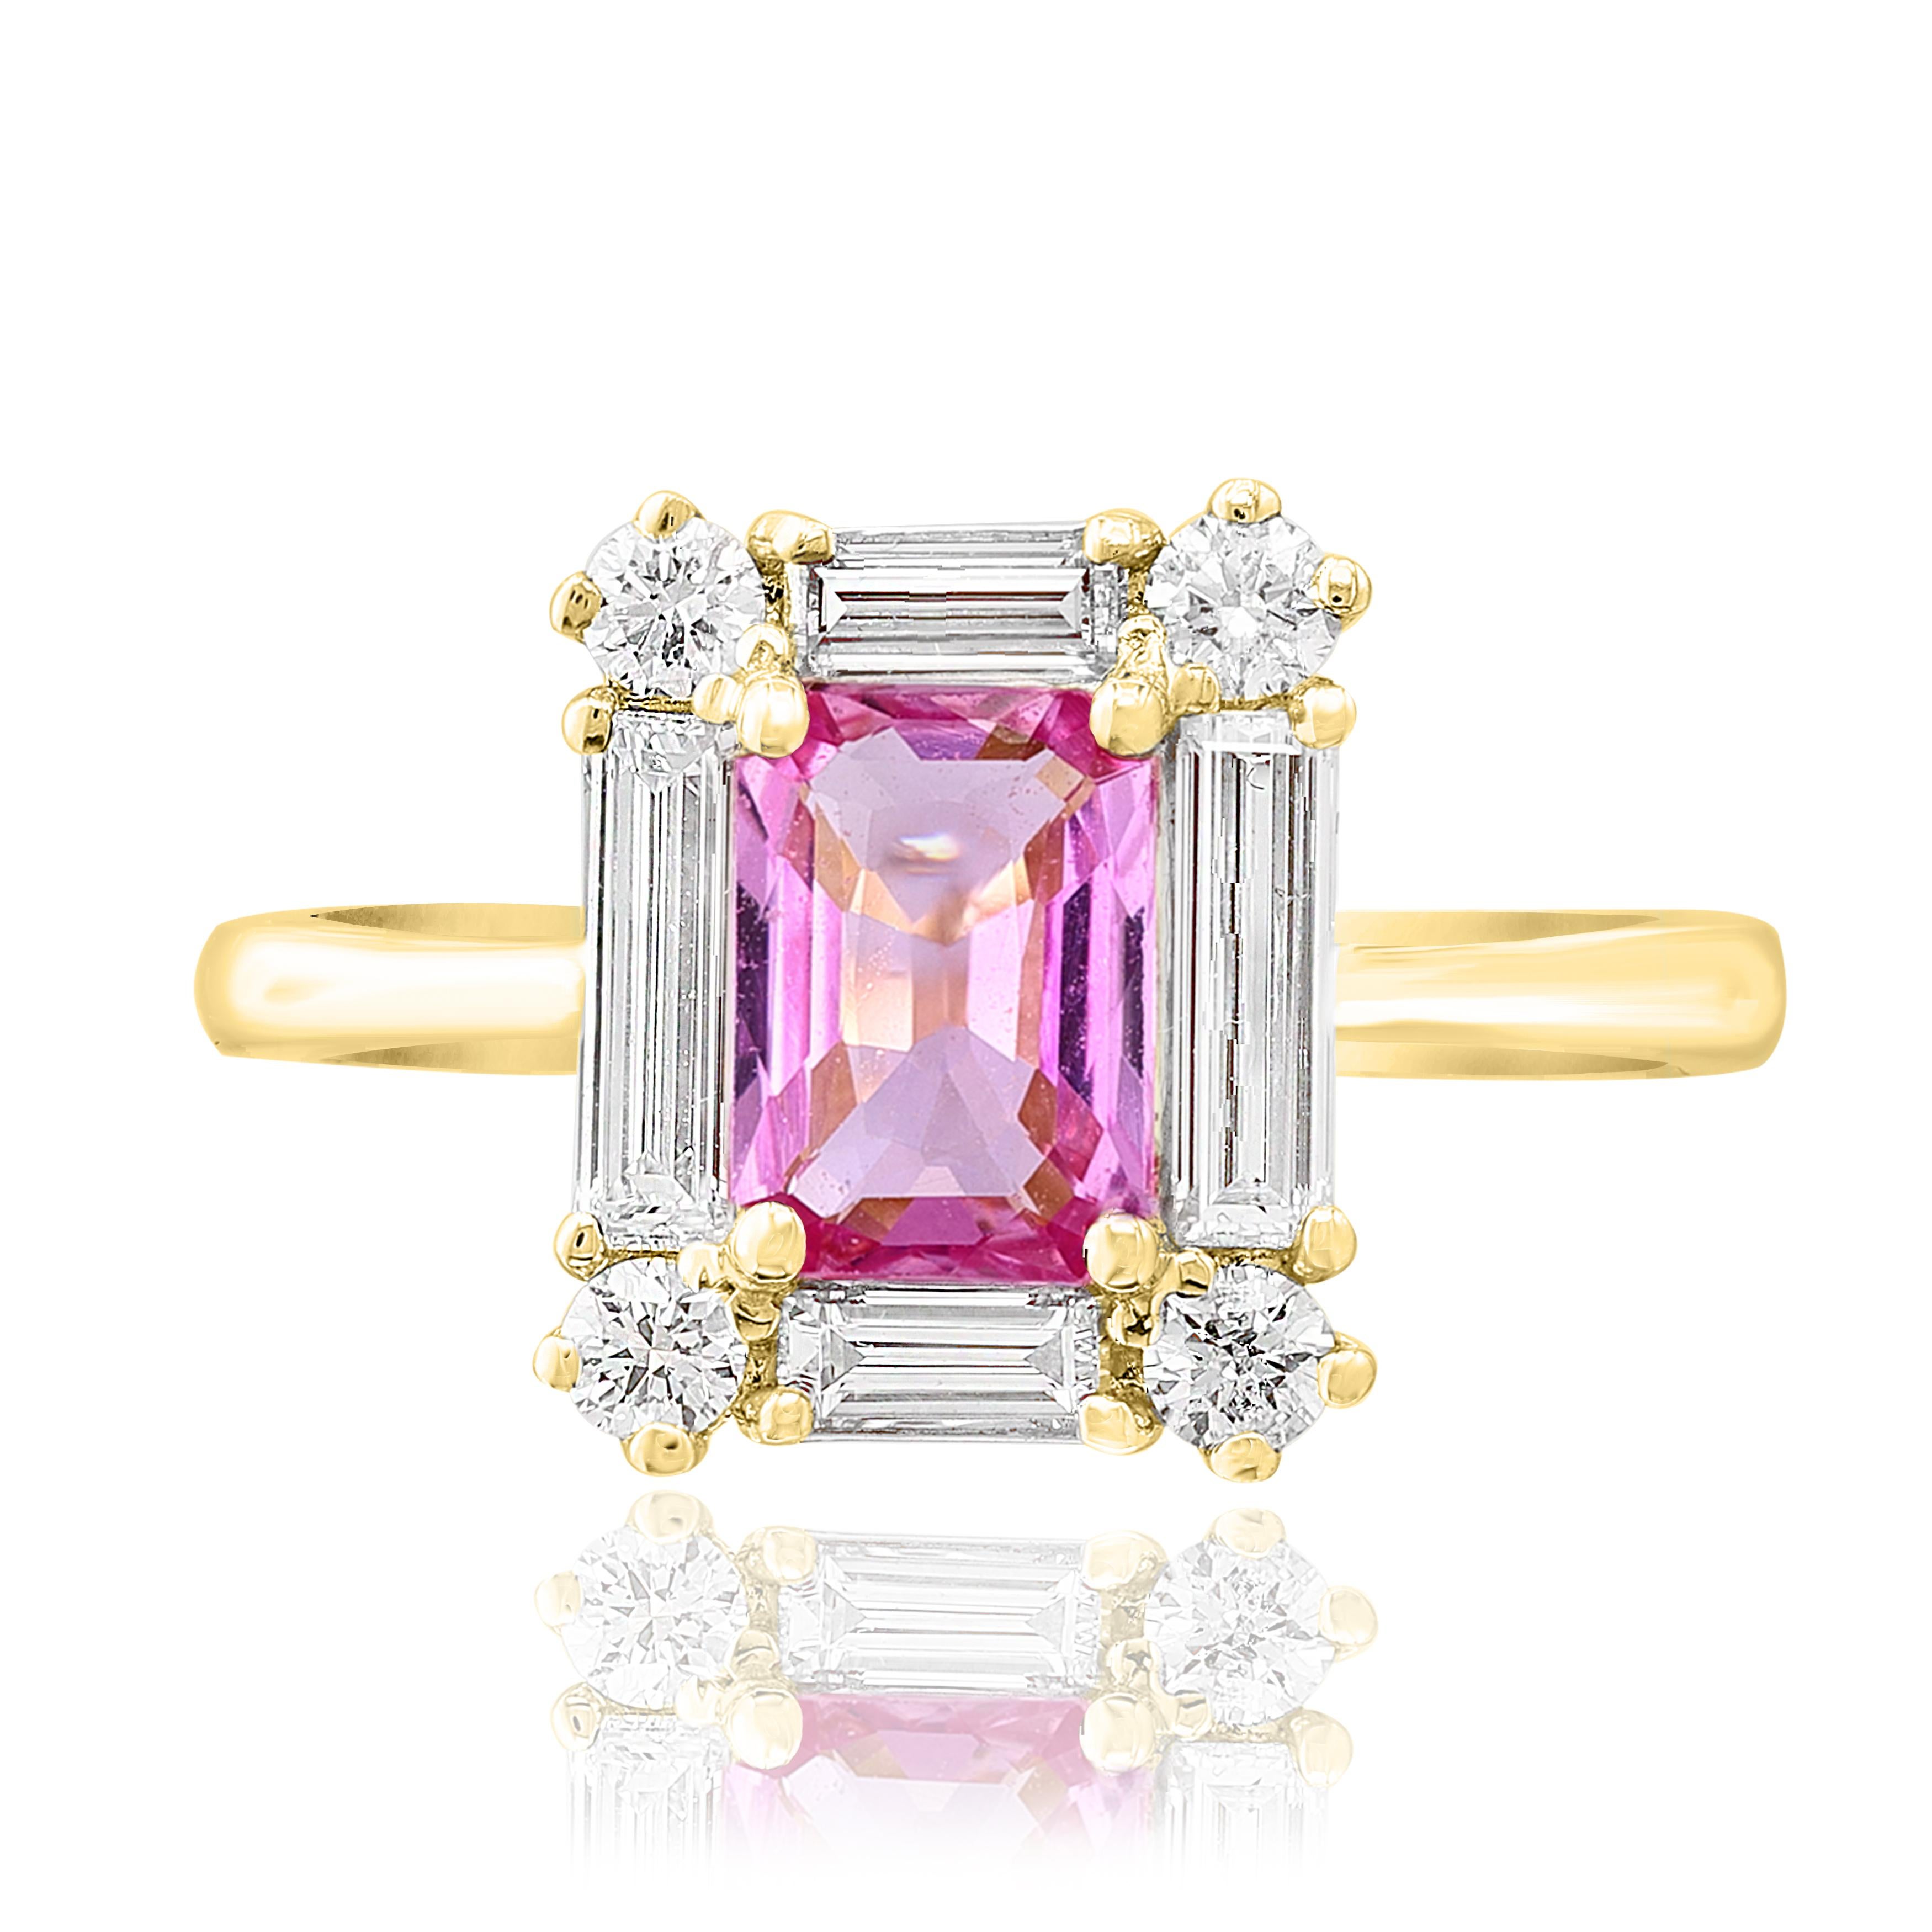 Ein modischer Ring mit einem üppigen rosa Saphir im Smaragdschliff von 0,55 Karat. Der Mittelstein ist von einer Reihe runder Diamanten im Brillant- und Baguetteschliff mit einem Gesamtgewicht von 0,35 Karat umgeben. Hergestellt aus 14k Gelbgold.